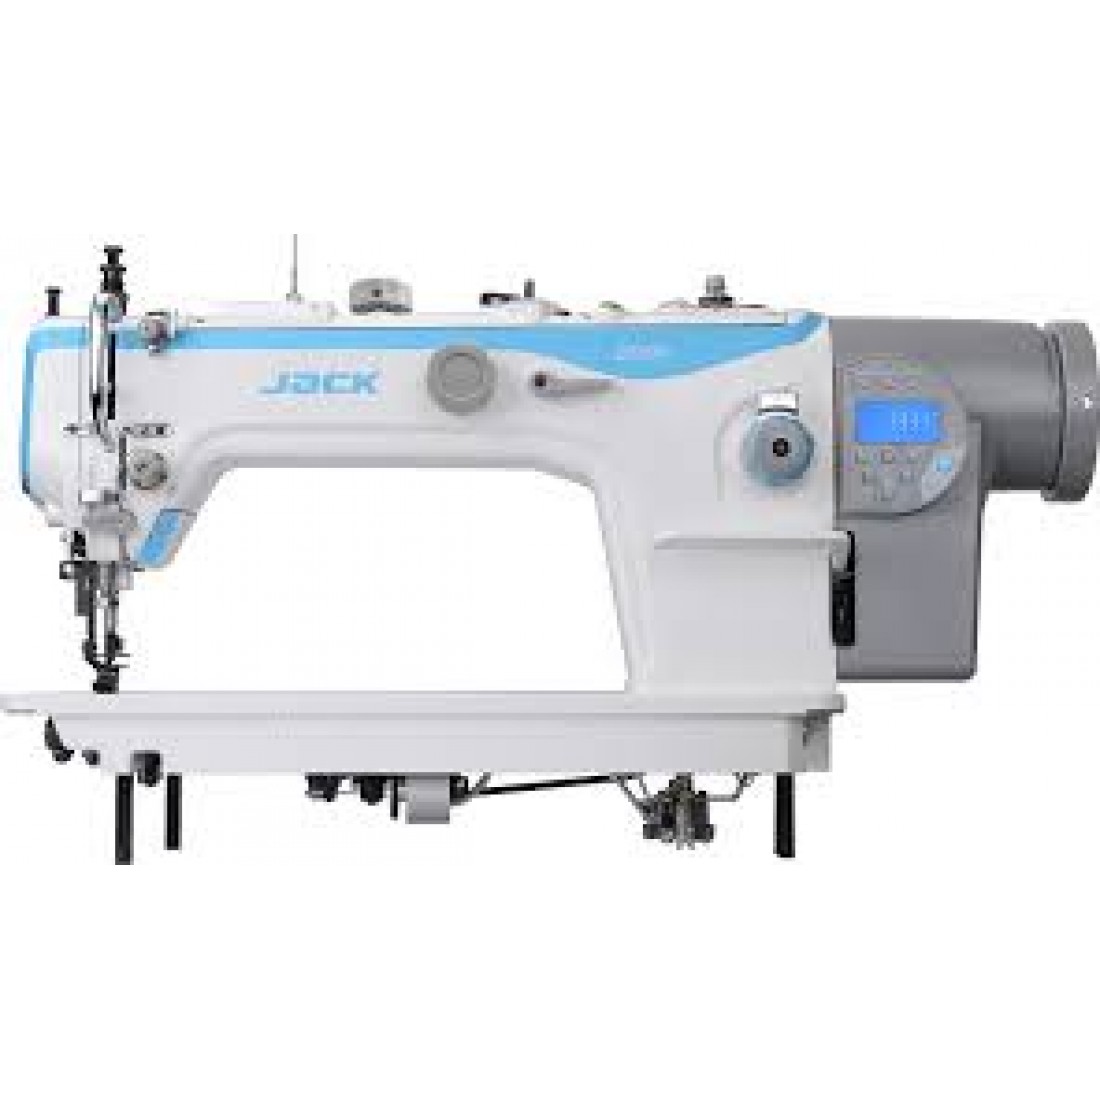 Промышленные прямострочные машинки. Промышленная швейная машина Jack JK-2030ghc-4q. Jack JK-2060ghc-4q. Промышленная швейная машина Jack JK-2030ghc-4q(комплект). Швейная машина Jack 2060 4q.